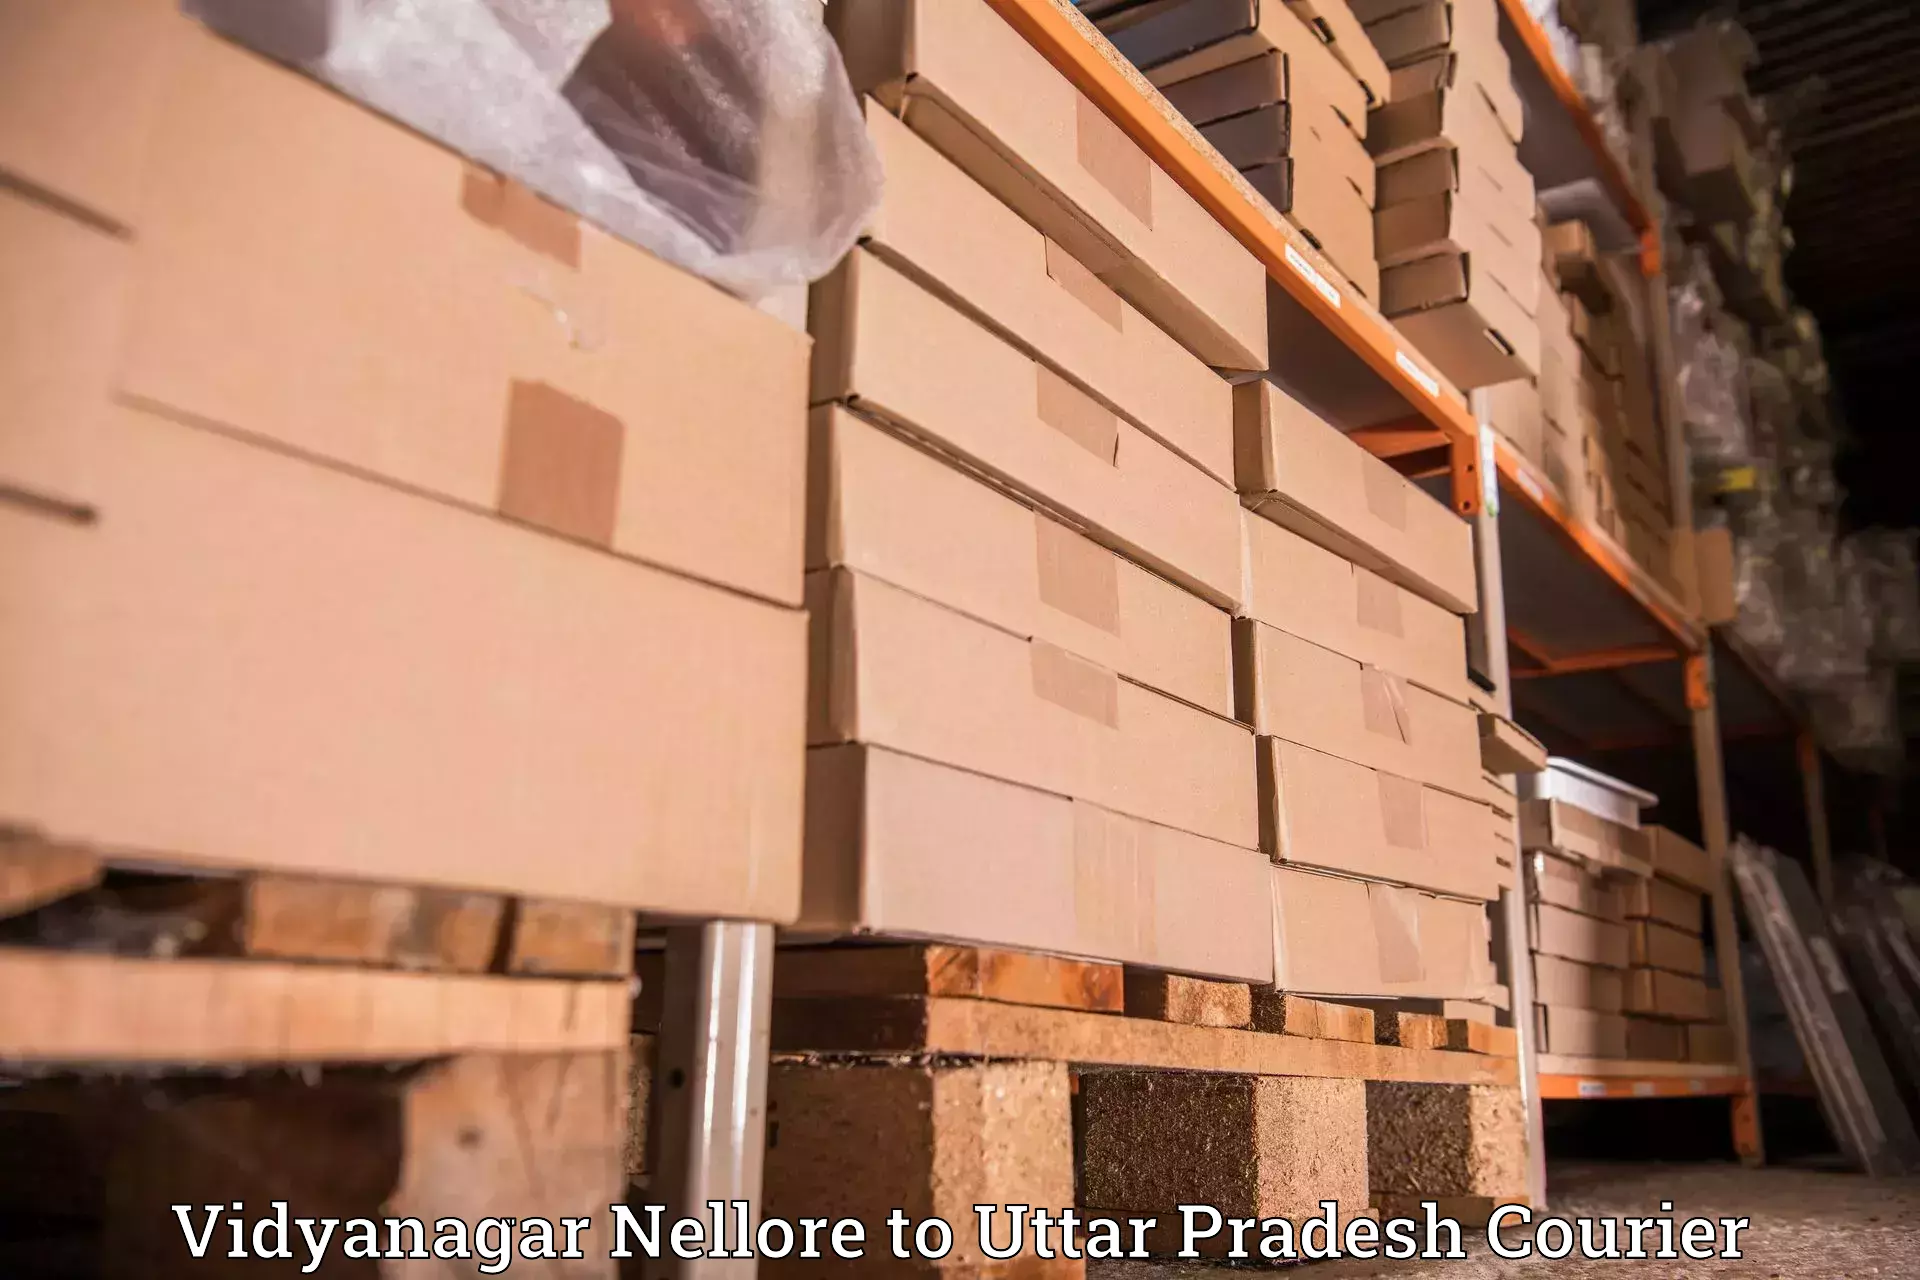 Comprehensive delivery network Vidyanagar Nellore to Uttar Pradesh